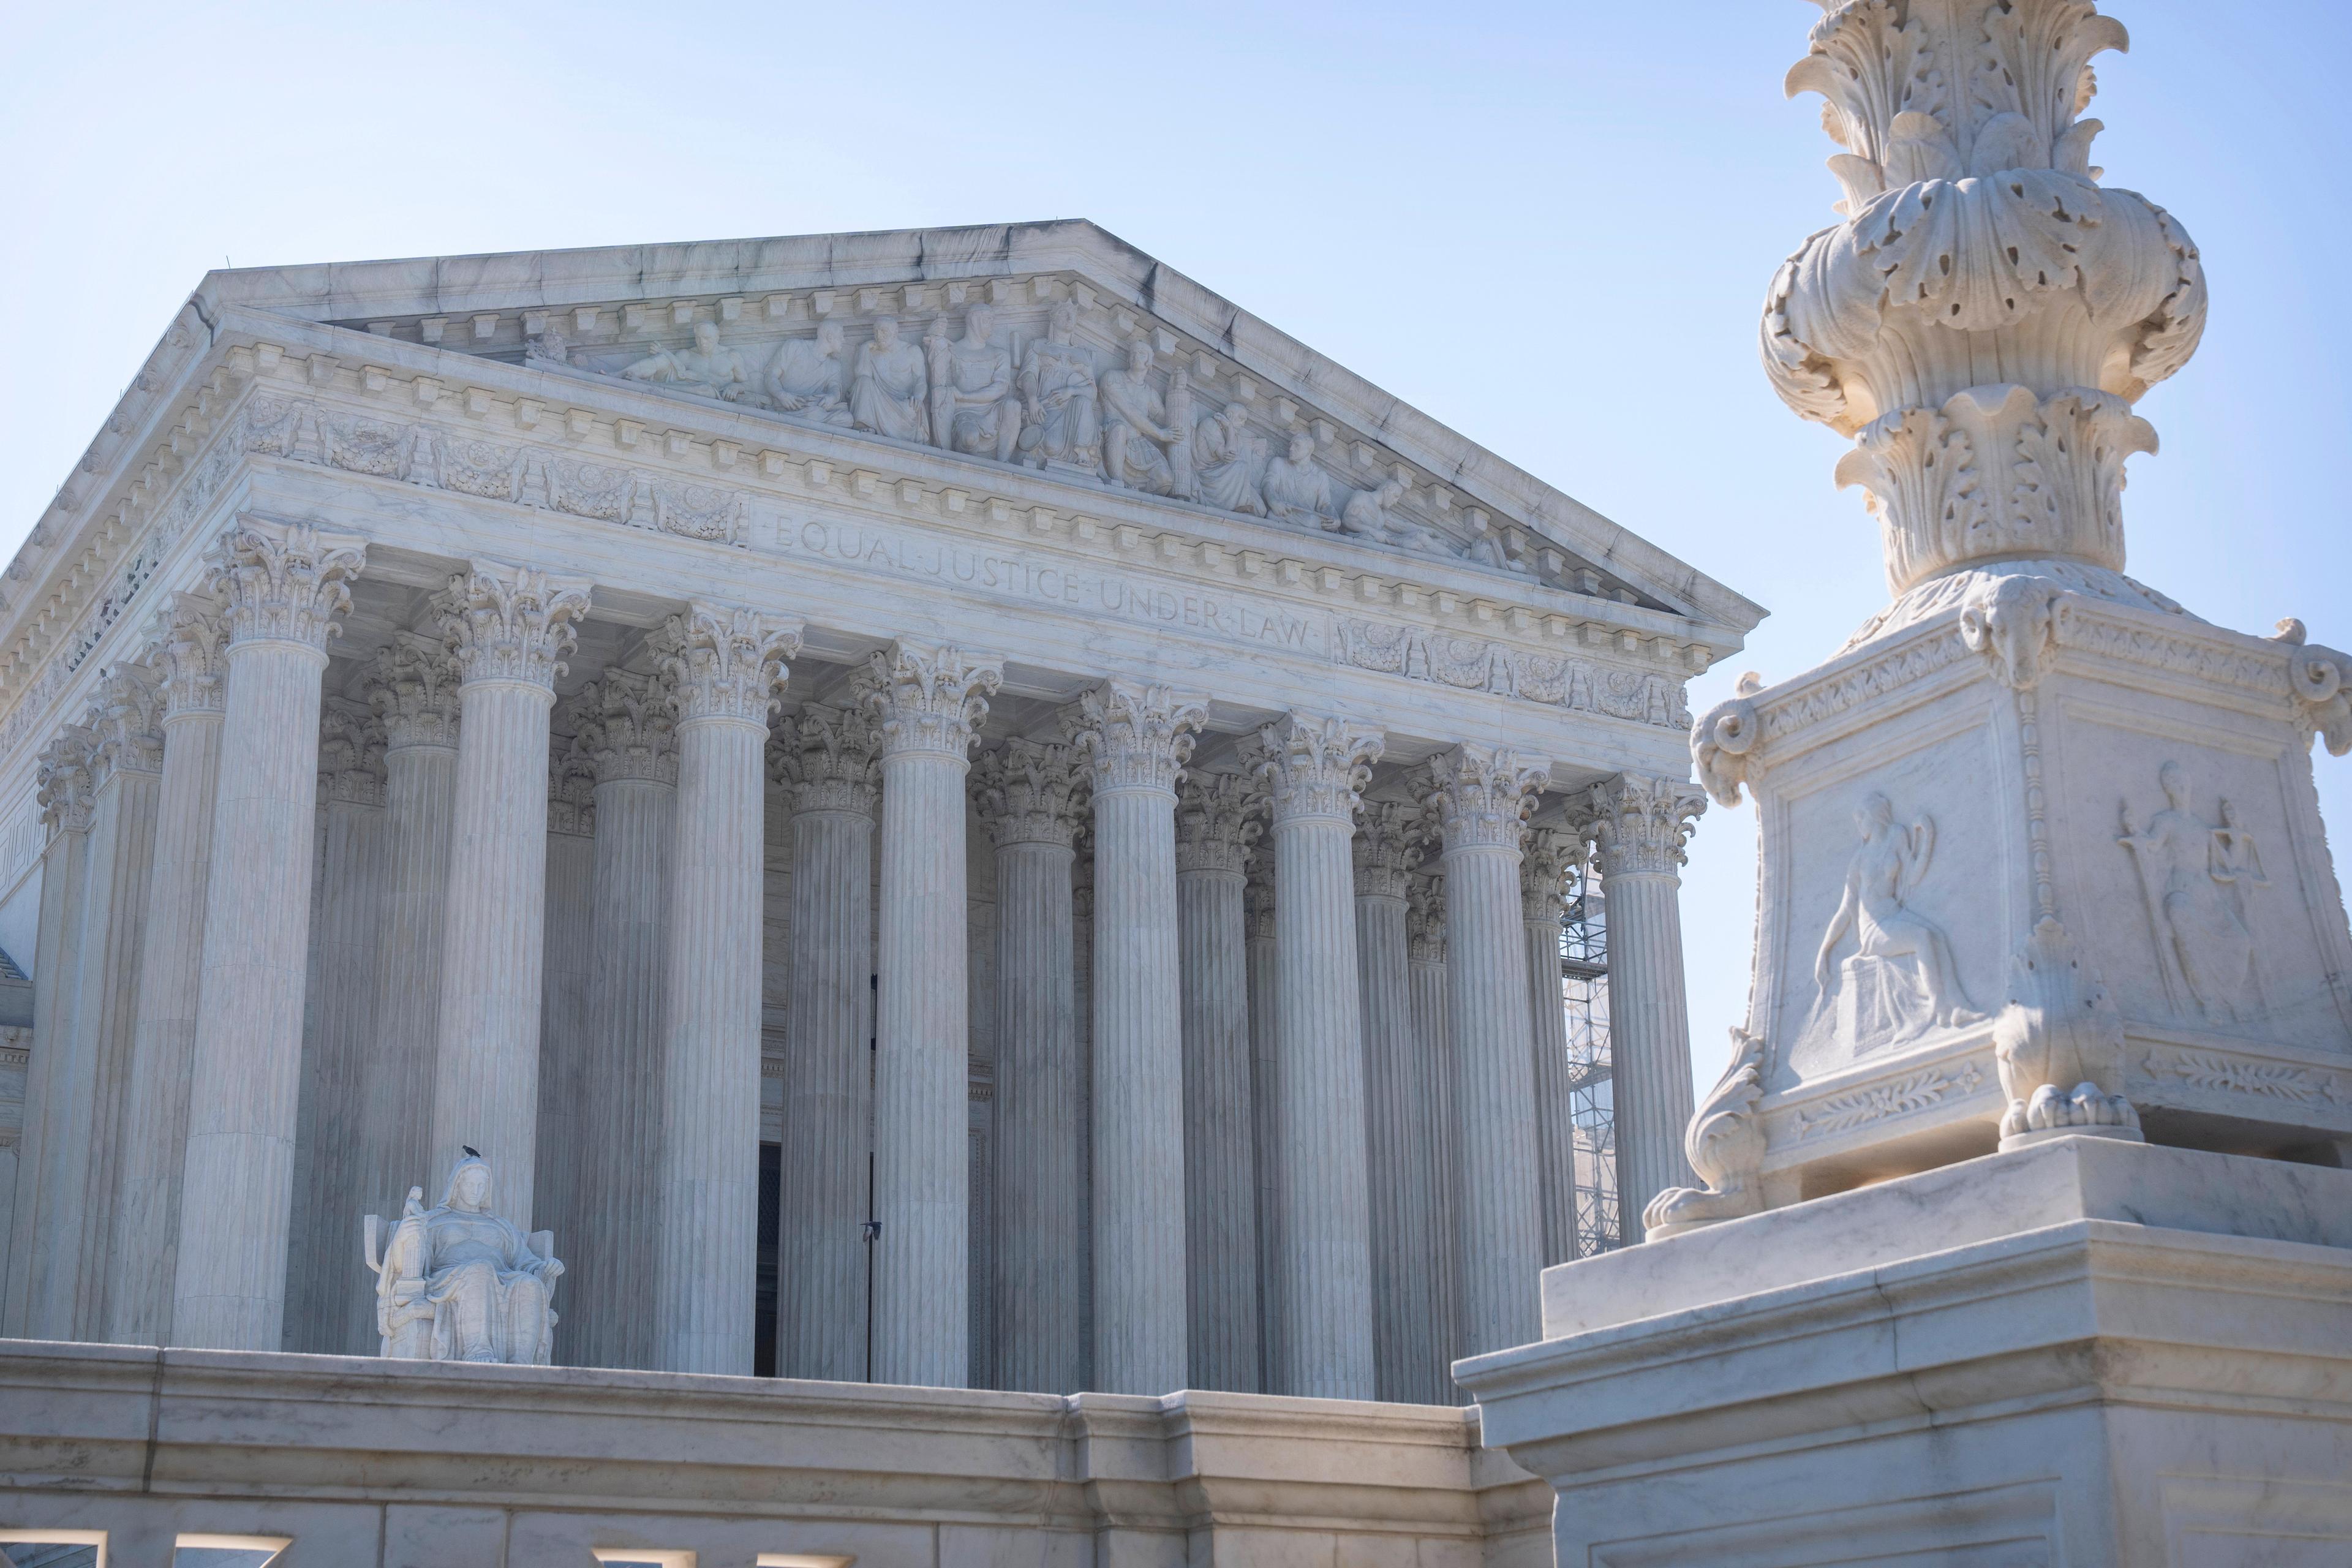 USA:s högsta domstol i Washington DC. Arkivbild. Foto: Mark Schiefelbein/AP/TT